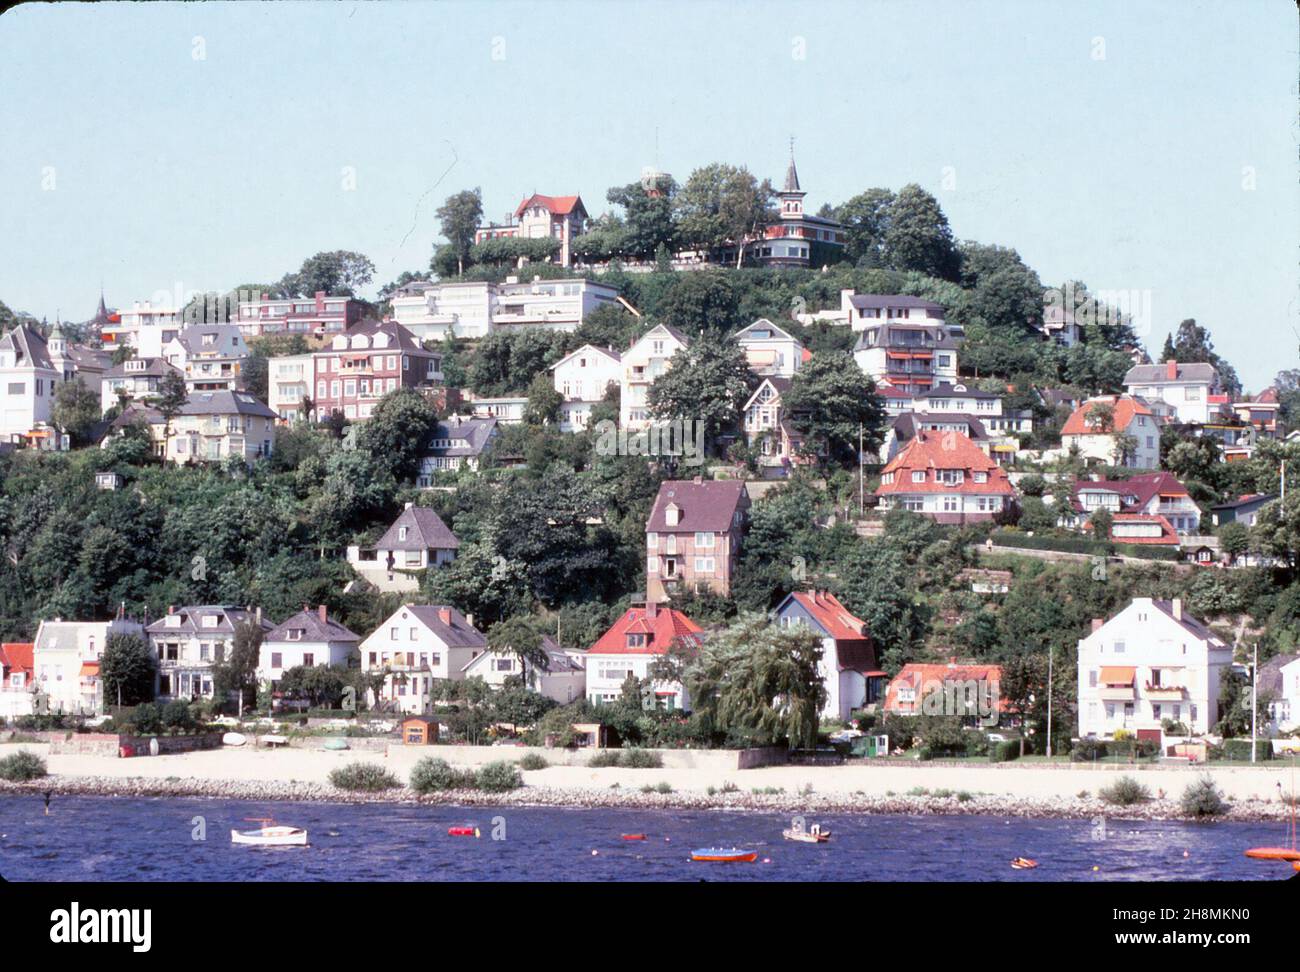 Amburgo - Blankenese, Hotel Süllberg in cima alla collina, sul fiume Elba, agosto 1978 Foto Stock